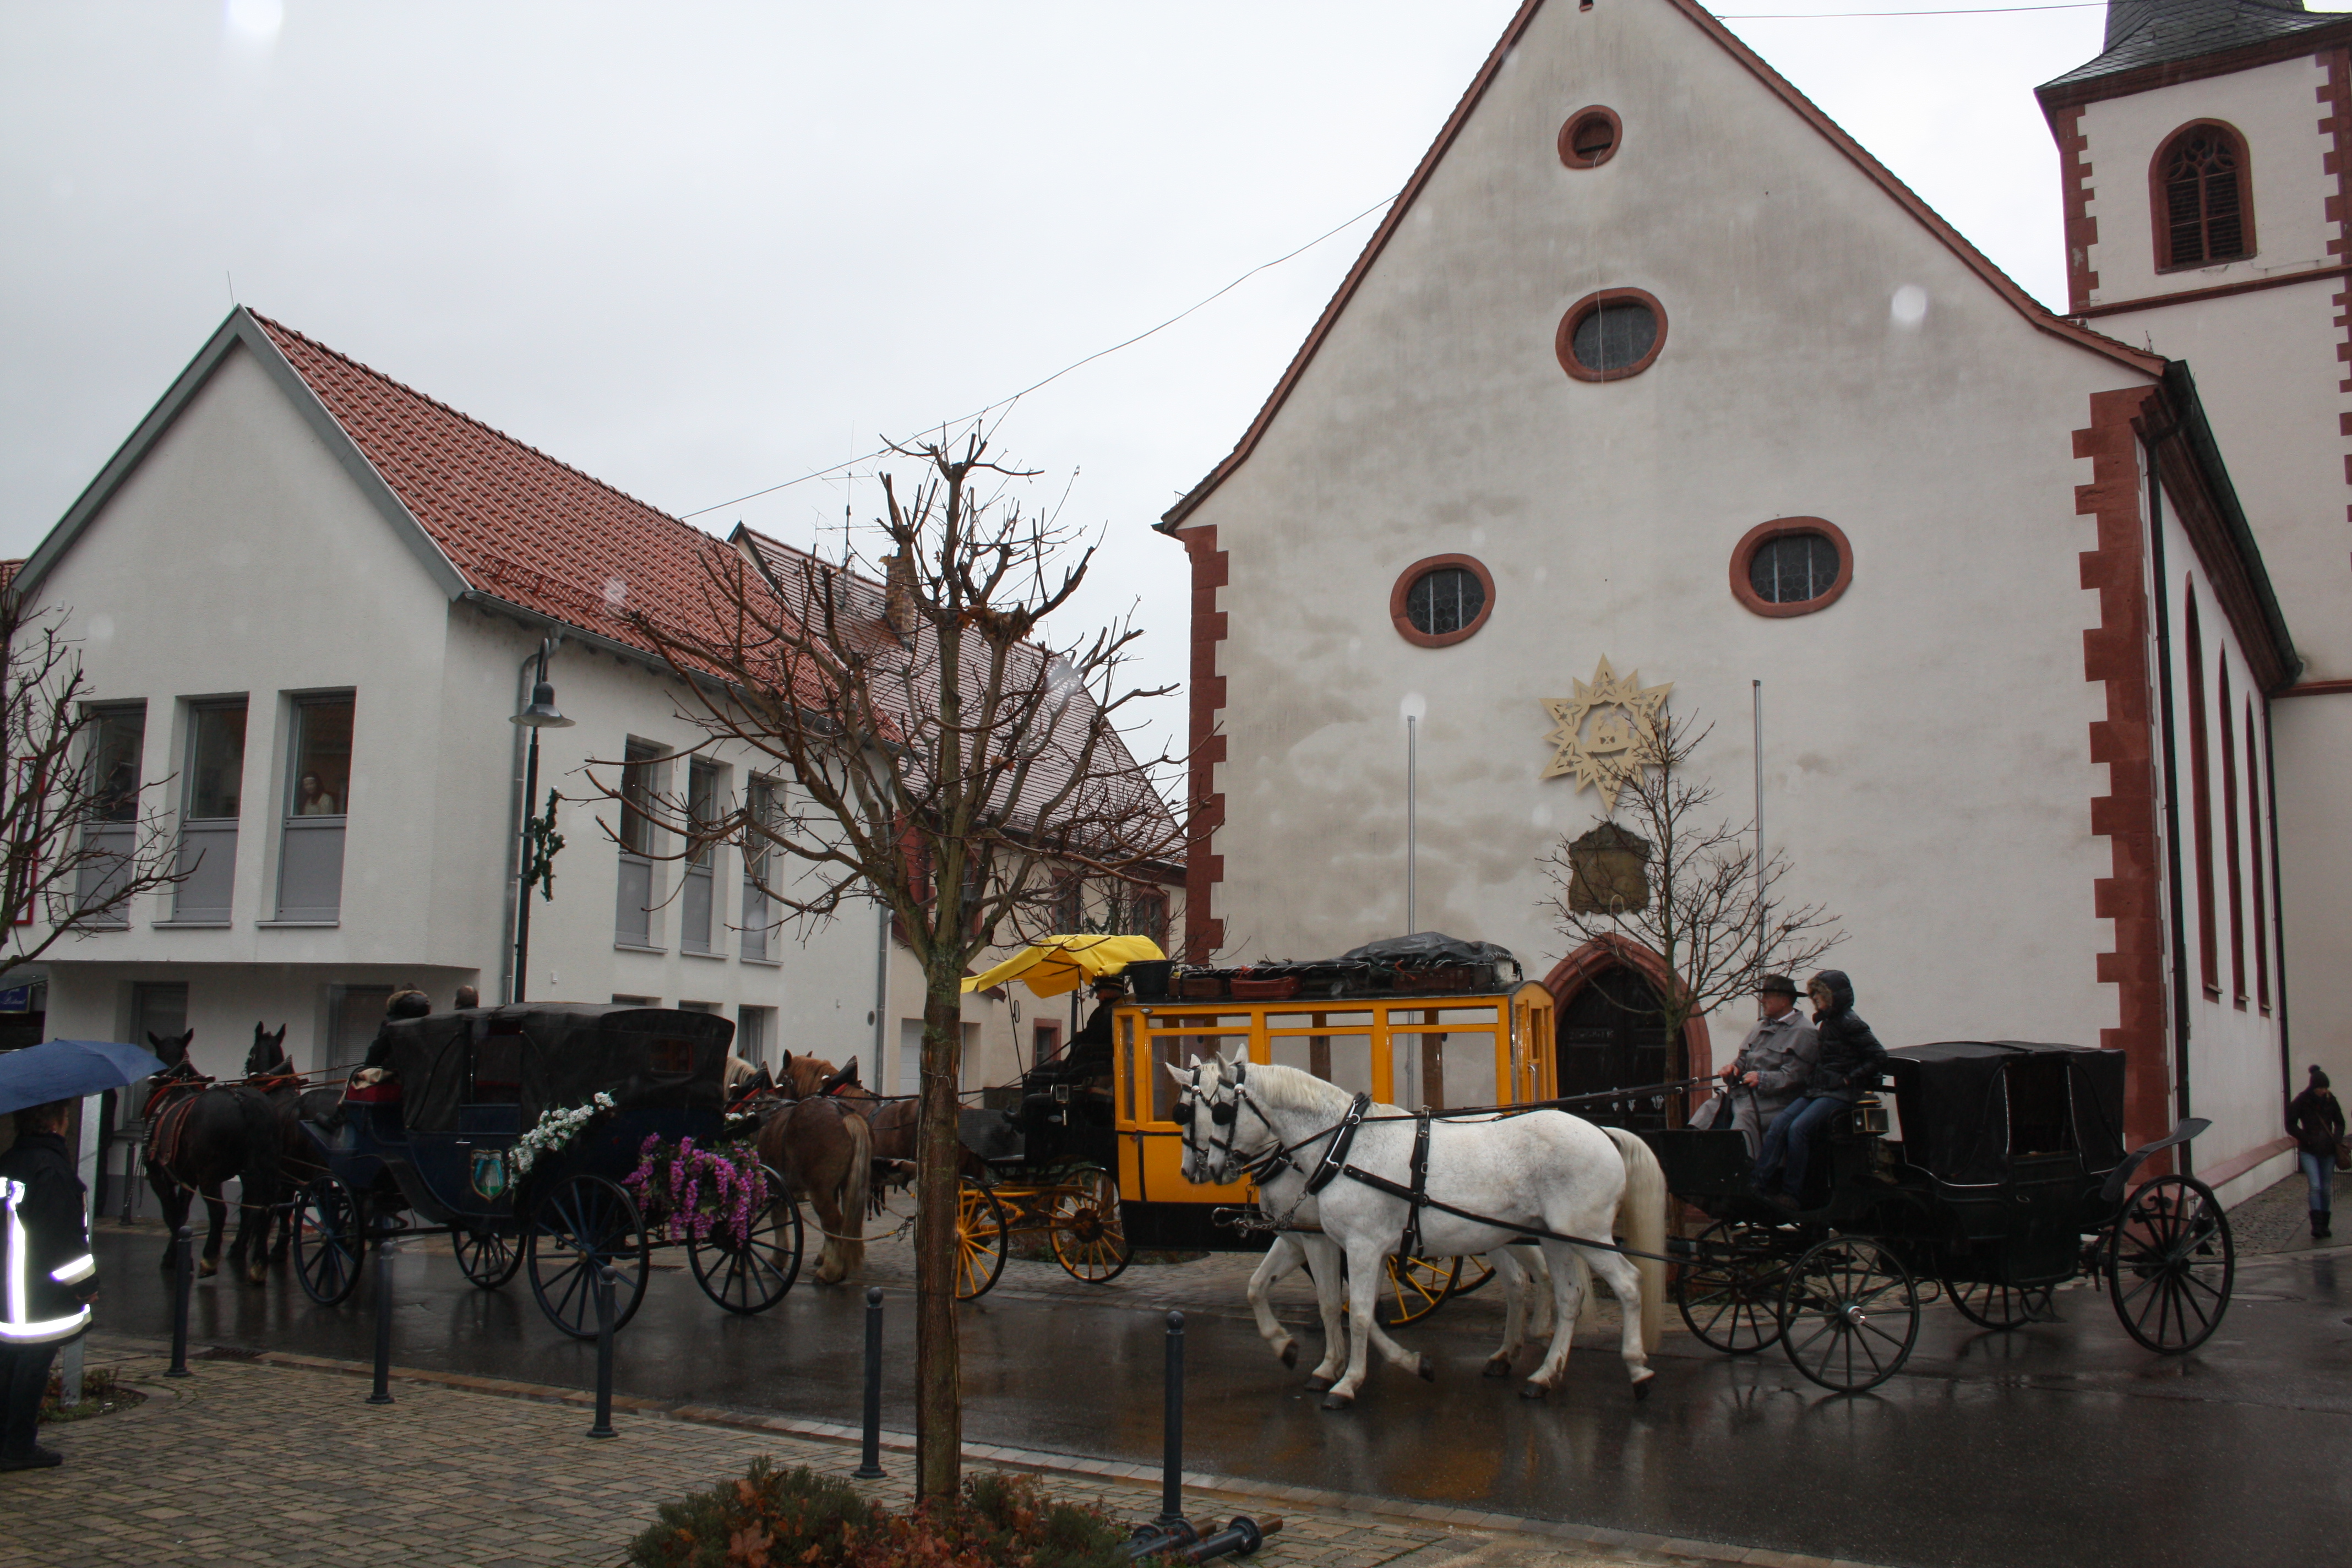 Weihnachtsmarkt Himmelstadt: Die Kutschen fahren vor zum Weihnachtspostamt, vorbei an der Kirche.